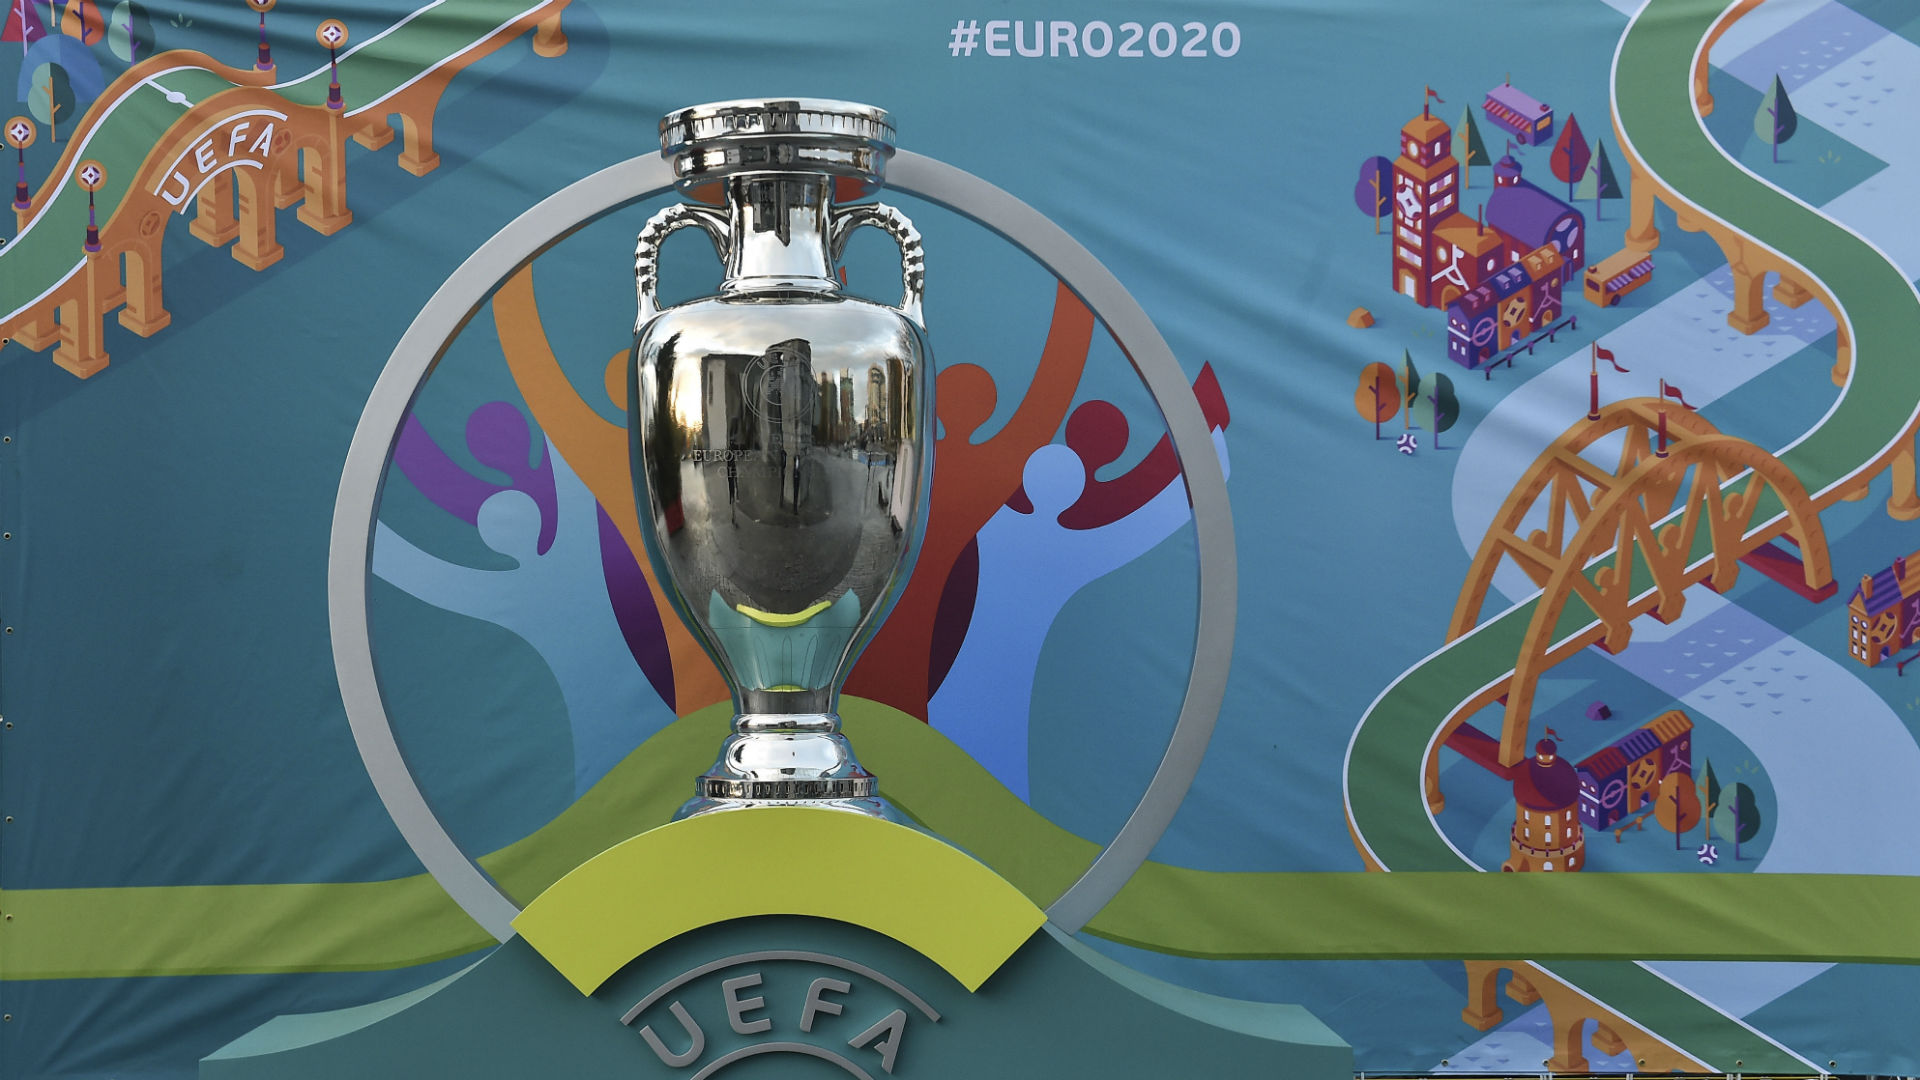 Avrupa Kupası: Halklar Arası Diyalog Şenliği mi?